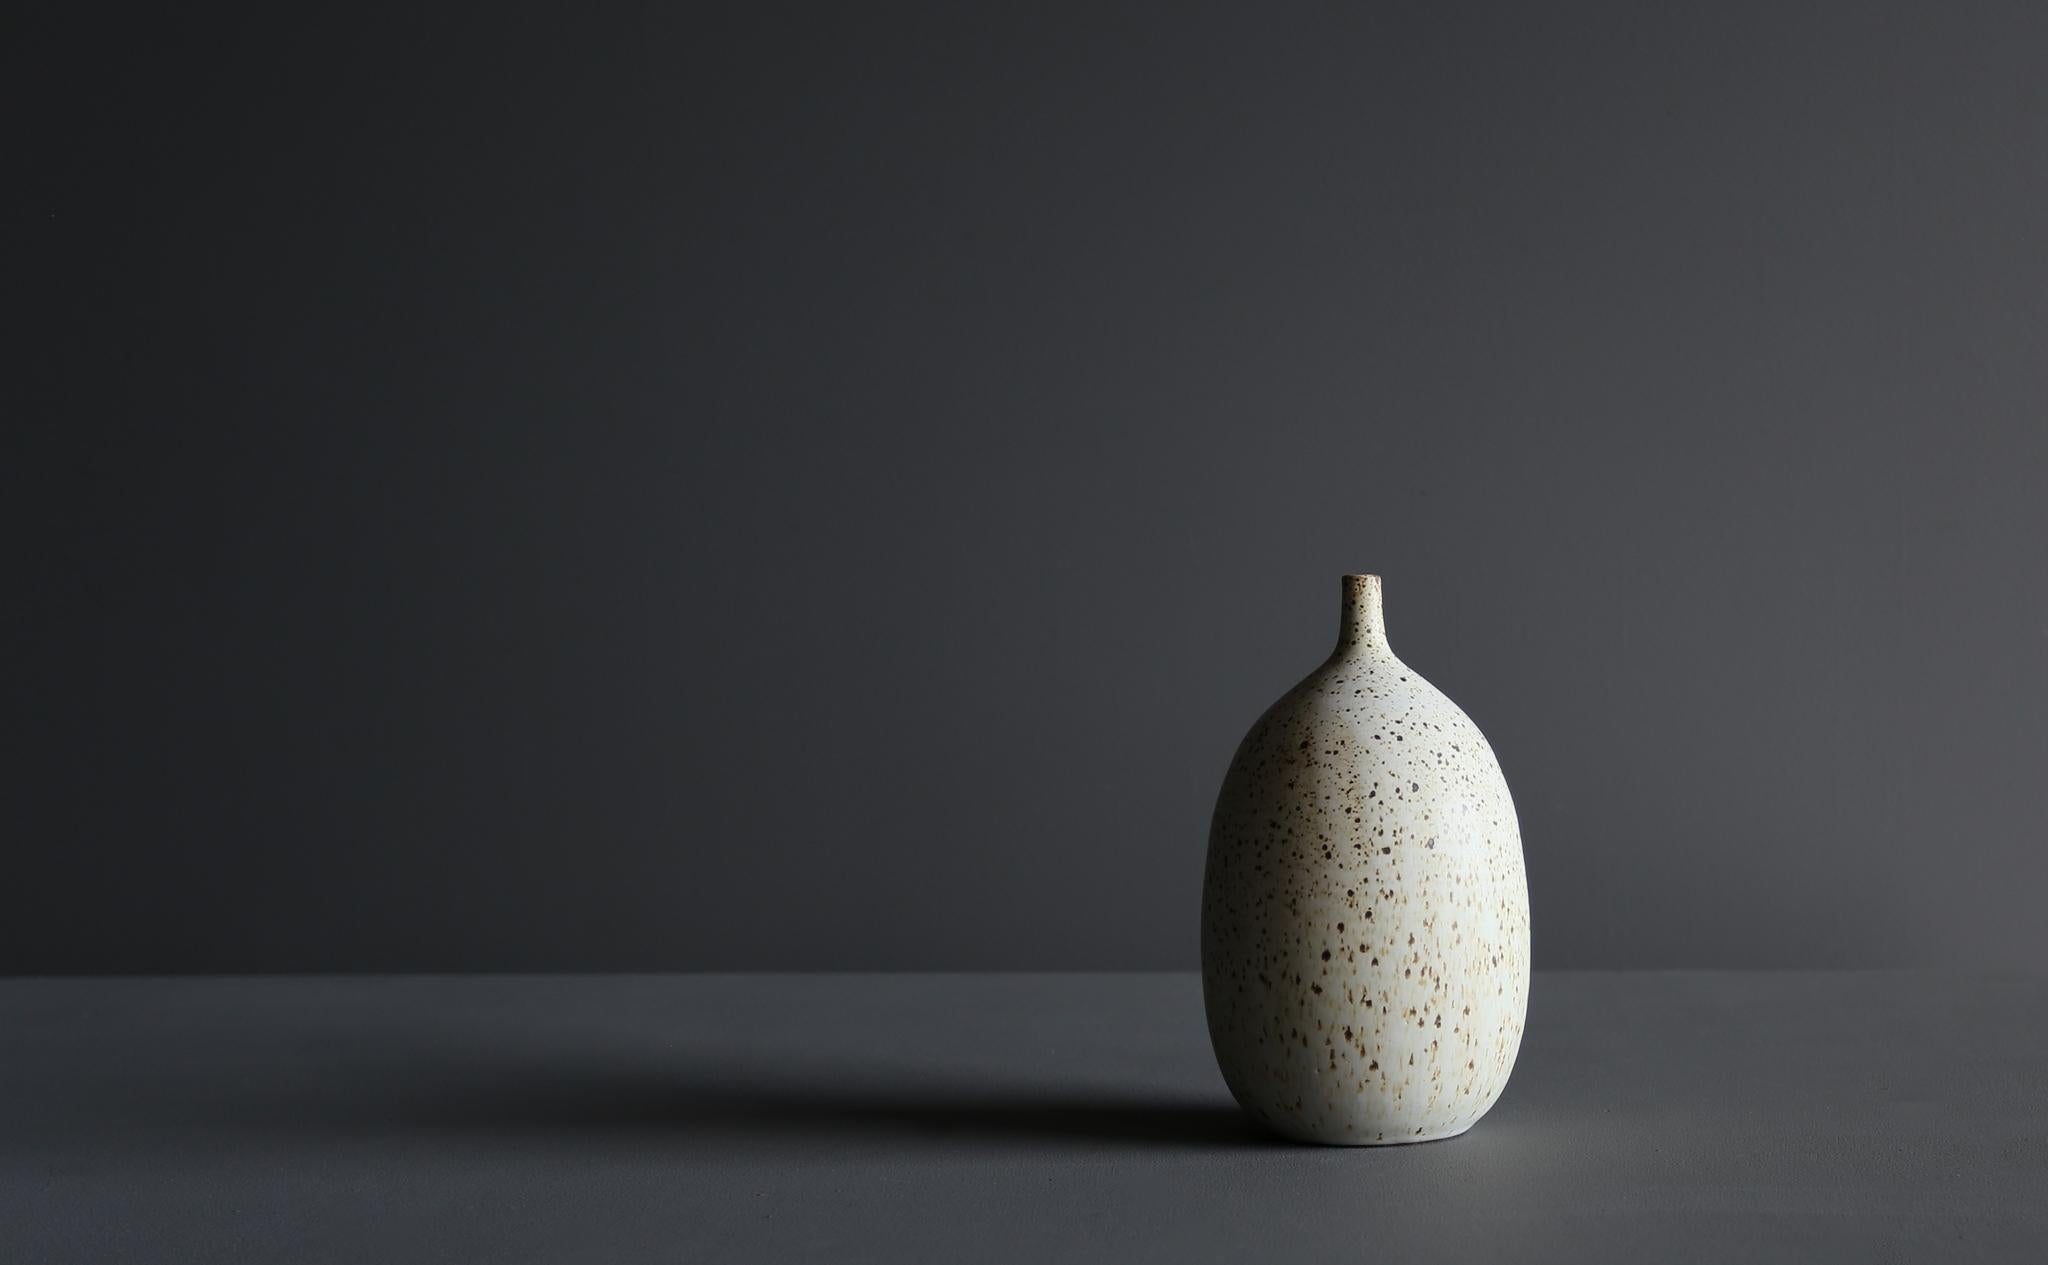 Glazed Tim Keenan Ceramic Vase